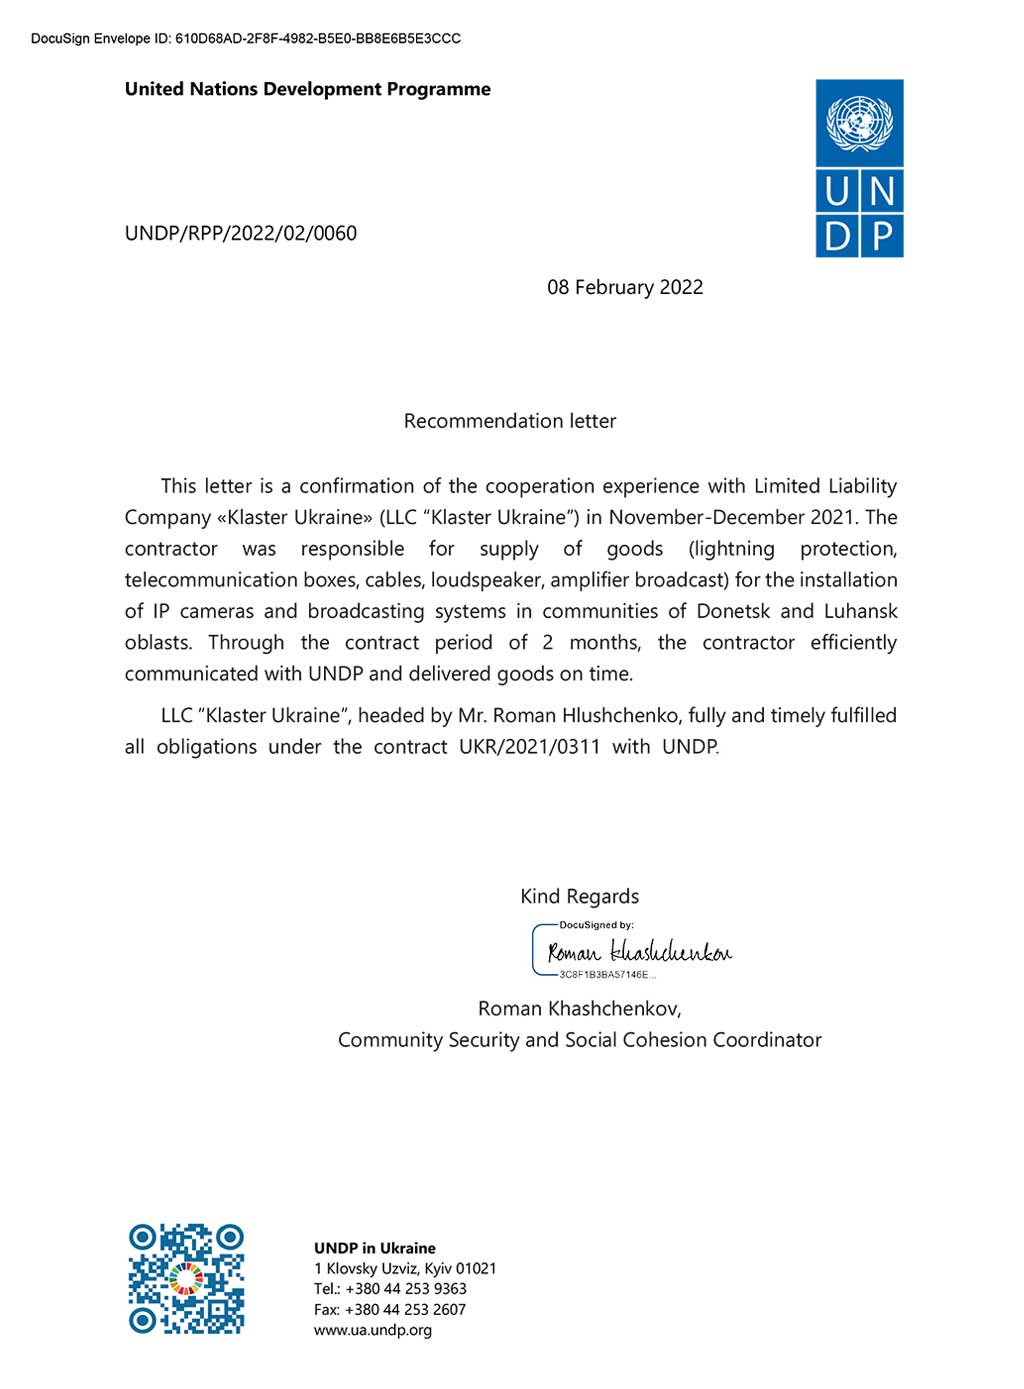 Рекомендаційний лист від ПРООН в Україні